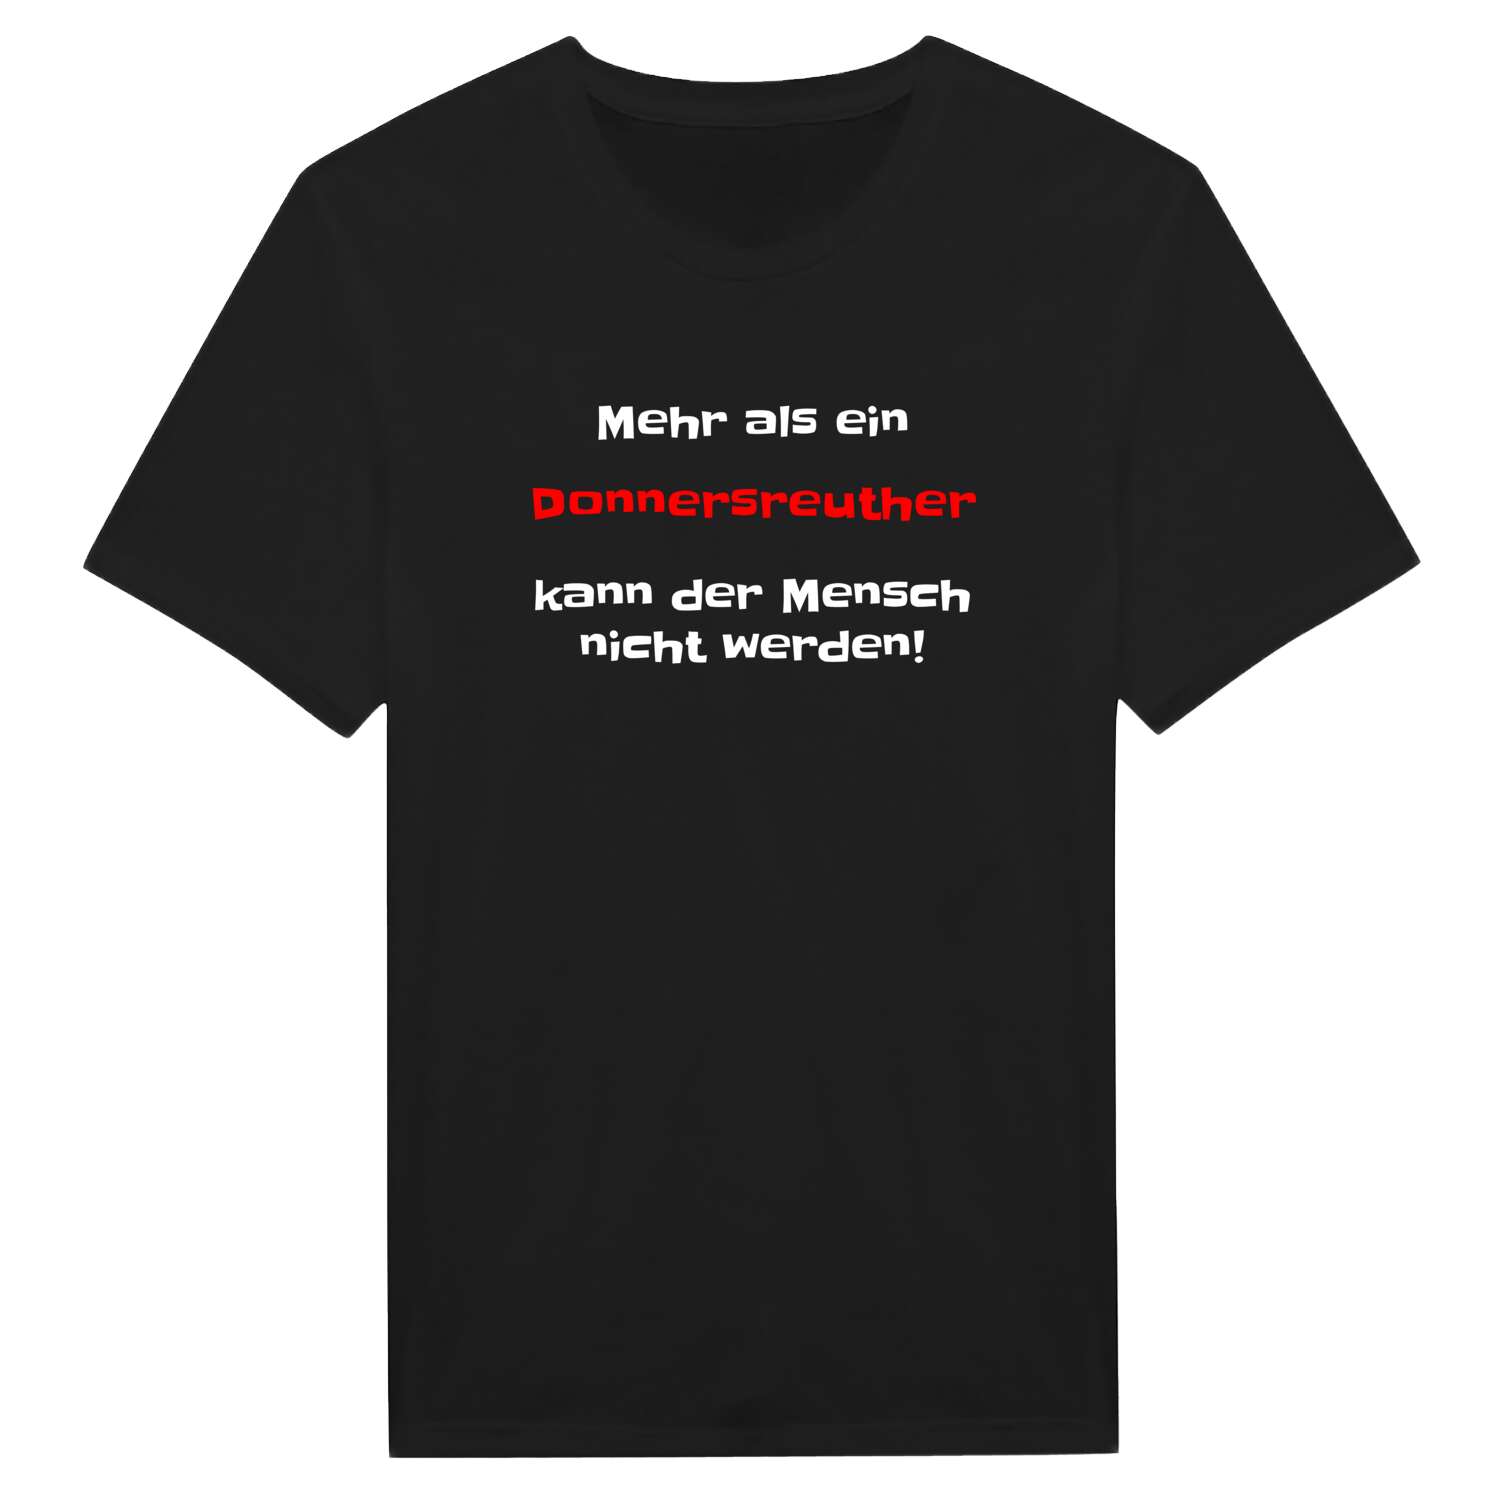 Donnersreuth T-Shirt »Mehr als ein«